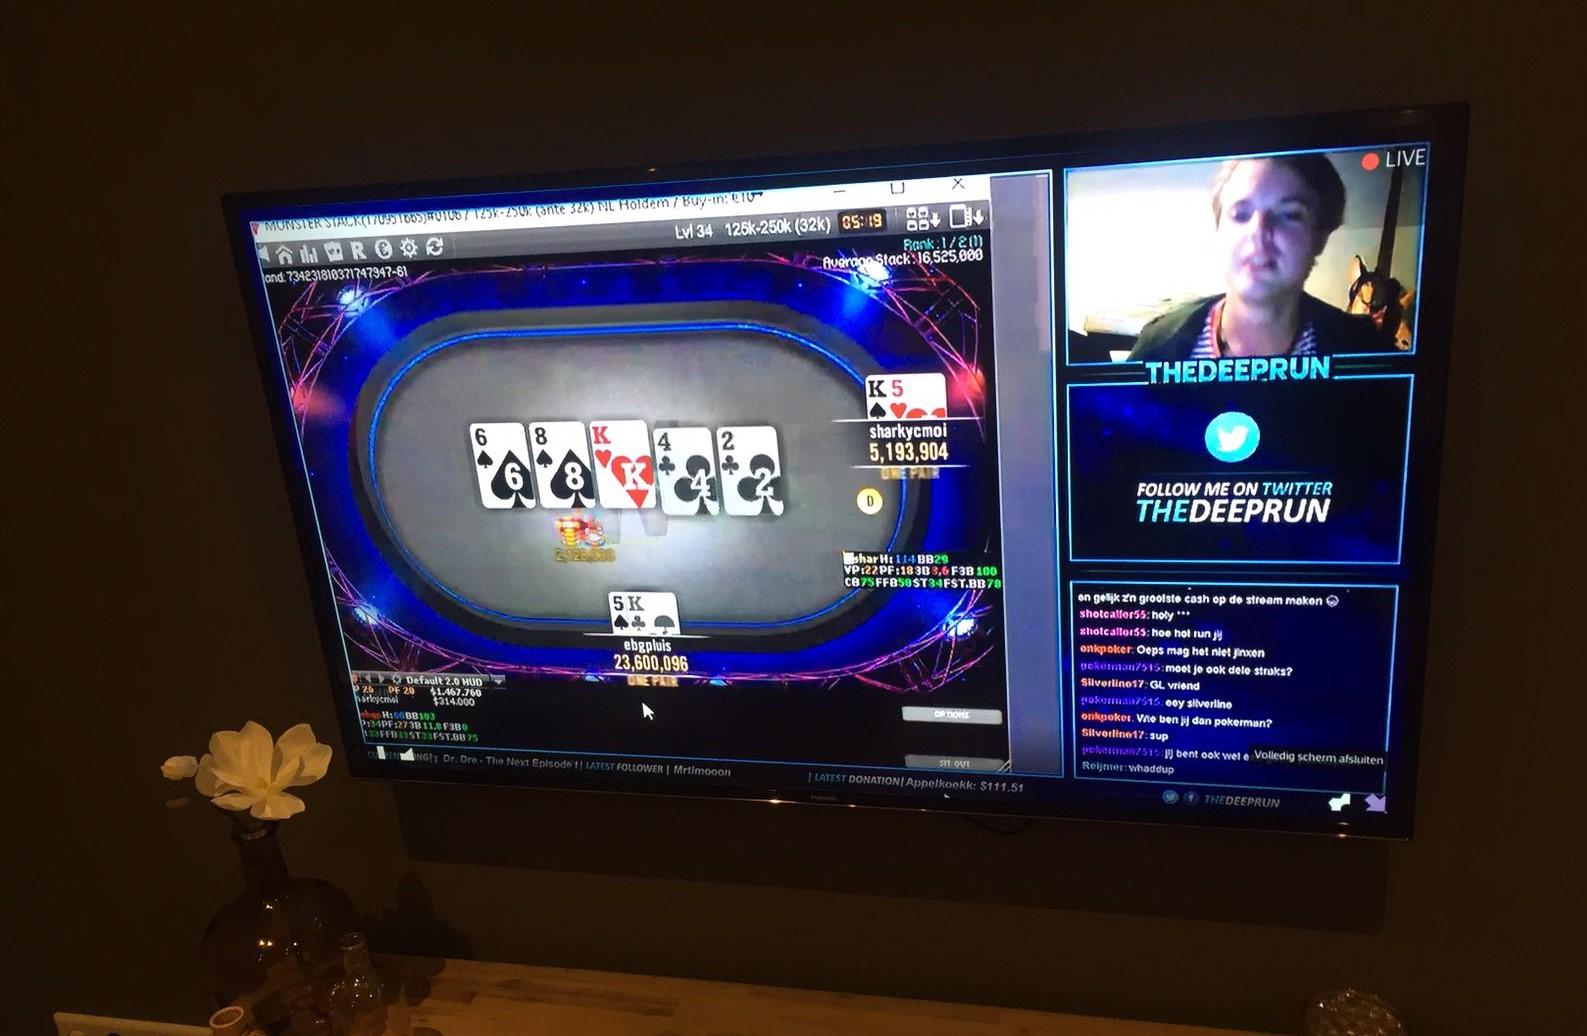 TheDeeprun wint $1,300 op eerste stream als ambassadeur ONK Poker